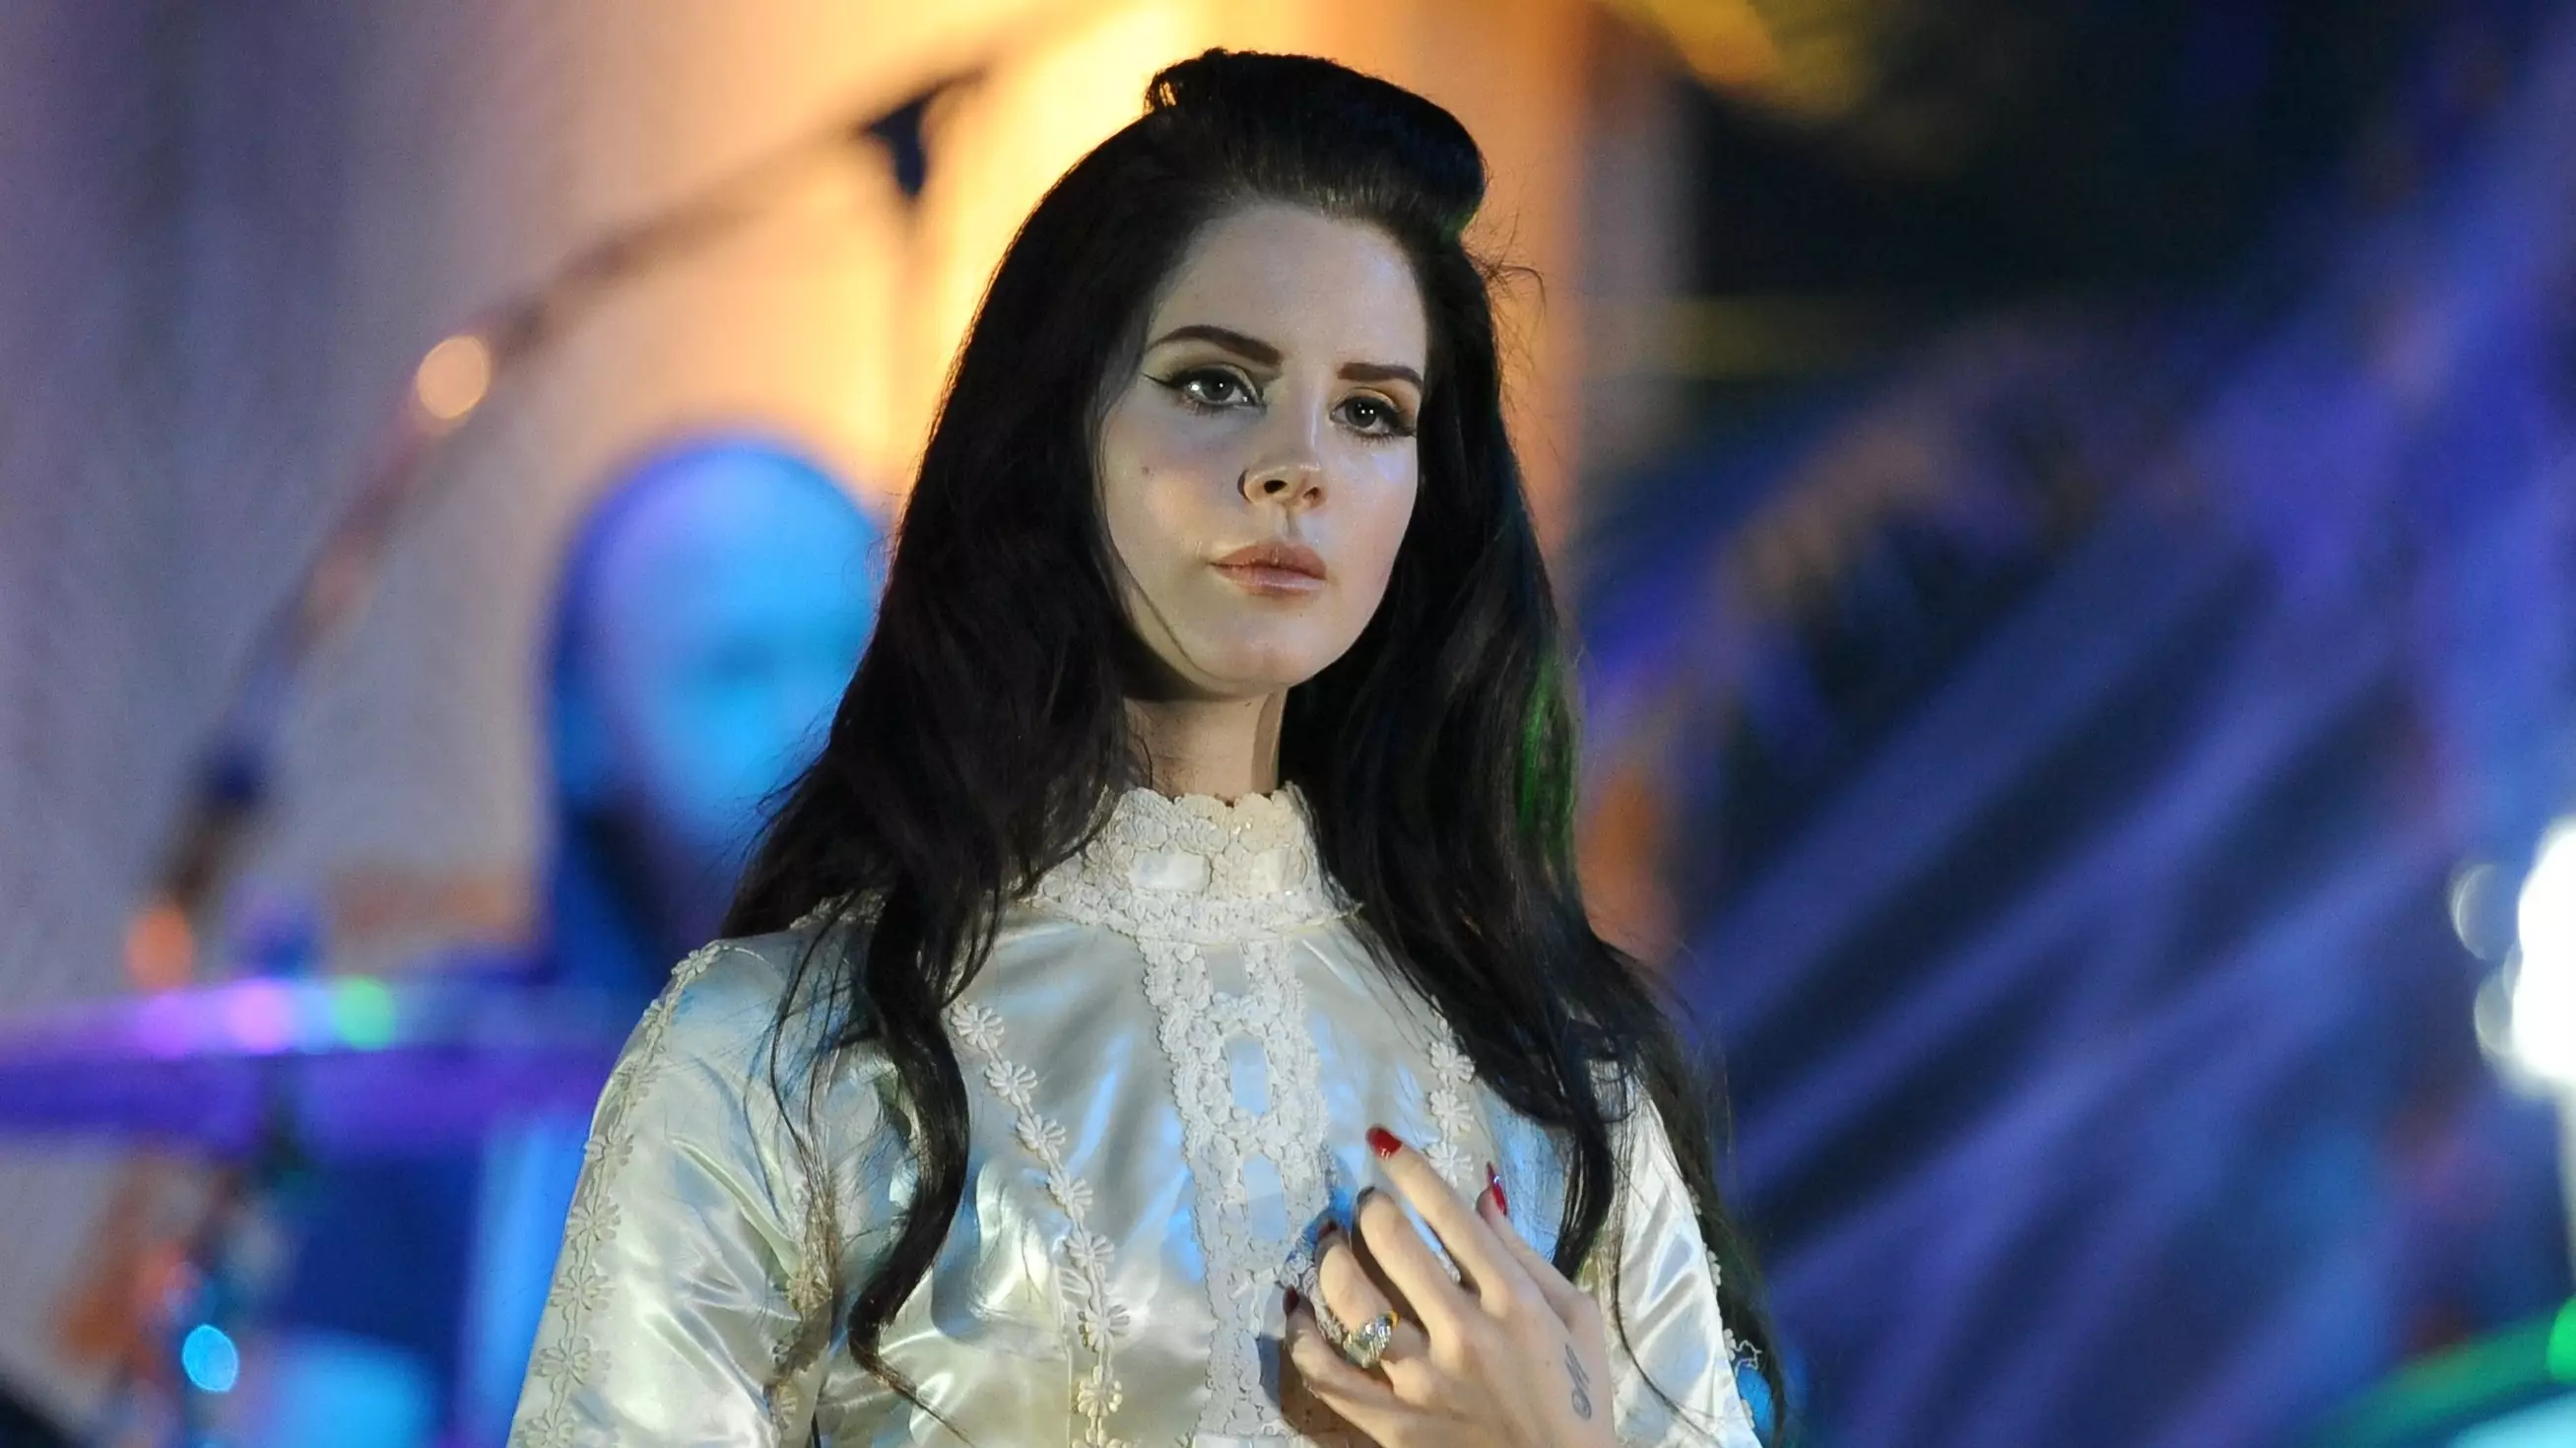 Lana Del Rey Hits Back At Critics Over Album Cover